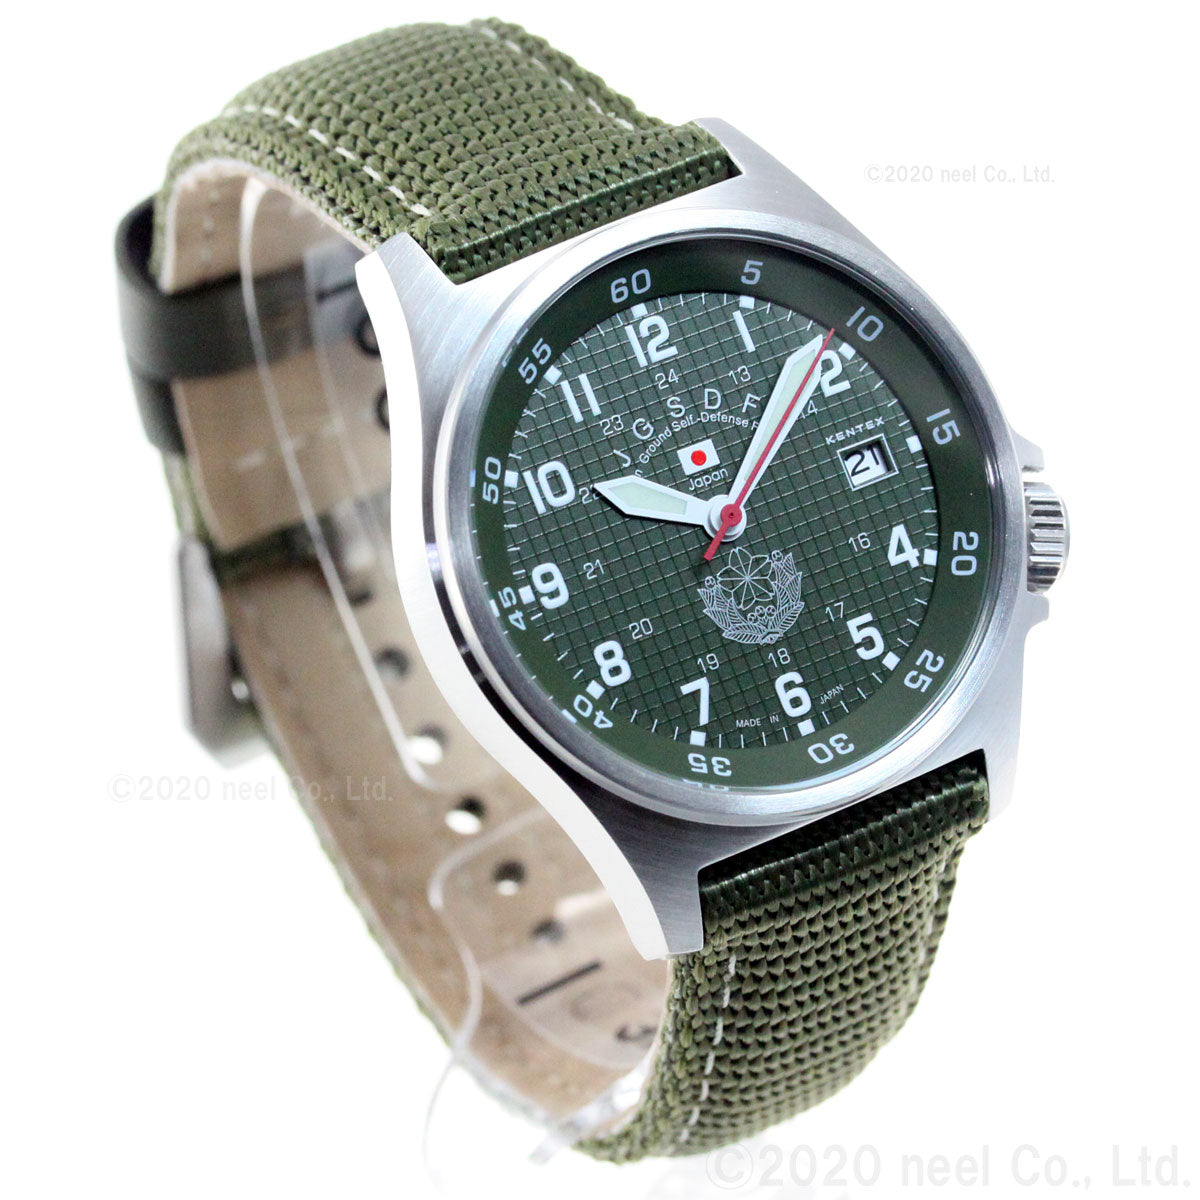 KENTEX ケンテックス 腕時計 メンズ JSDF スタンダード 自衛隊モデル 陸上自衛隊 ナイロンバンド S455M-01【正規品】